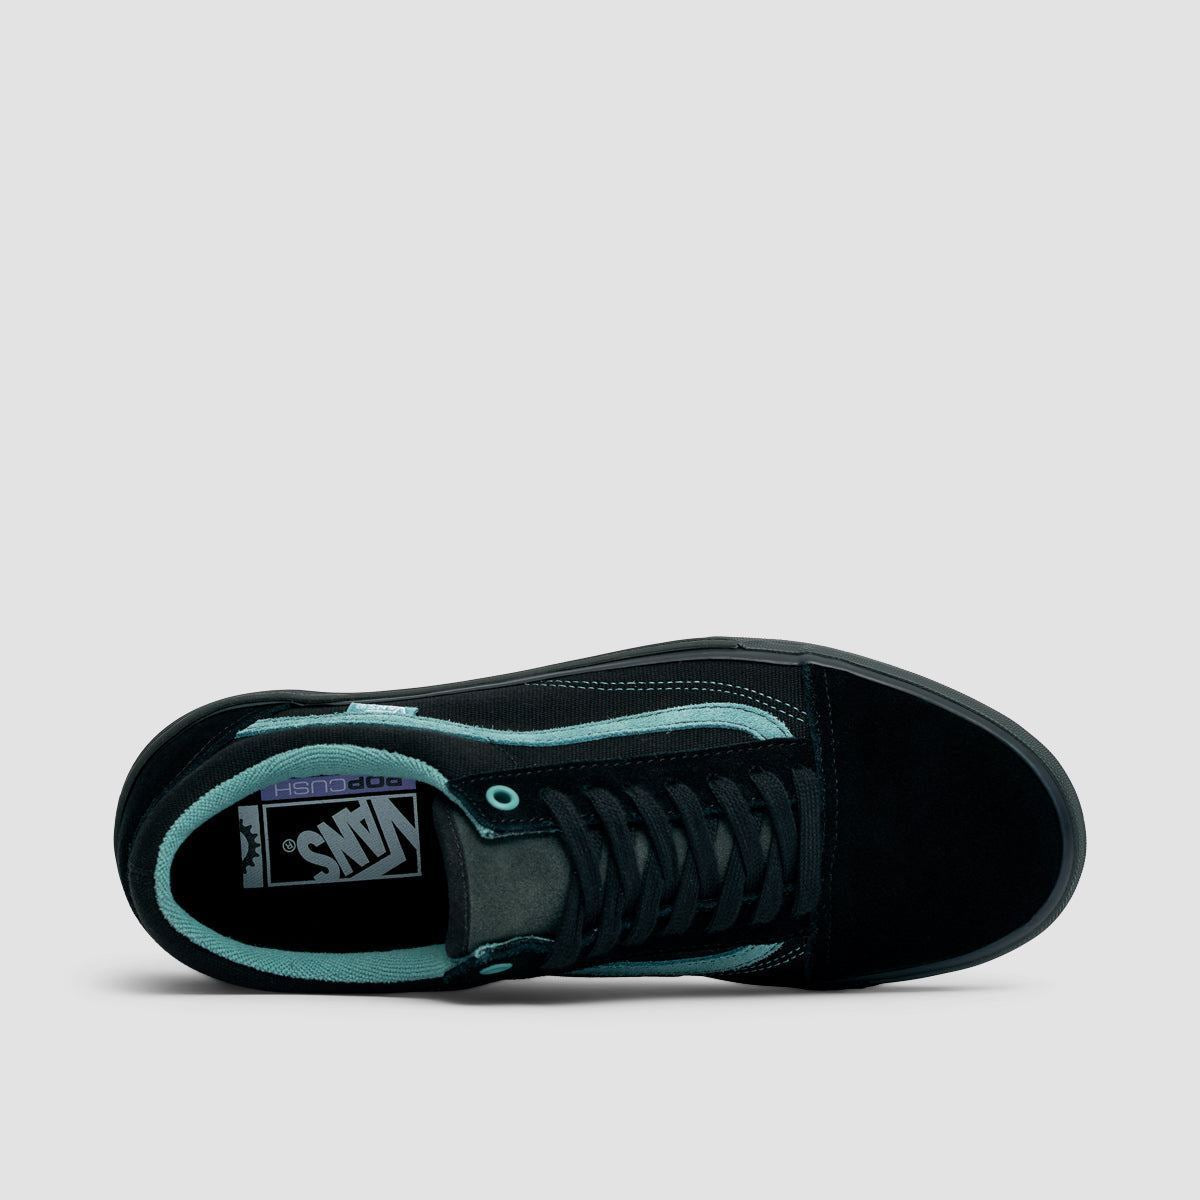 Vans BMX Old Skool Shoes - Black/Teal